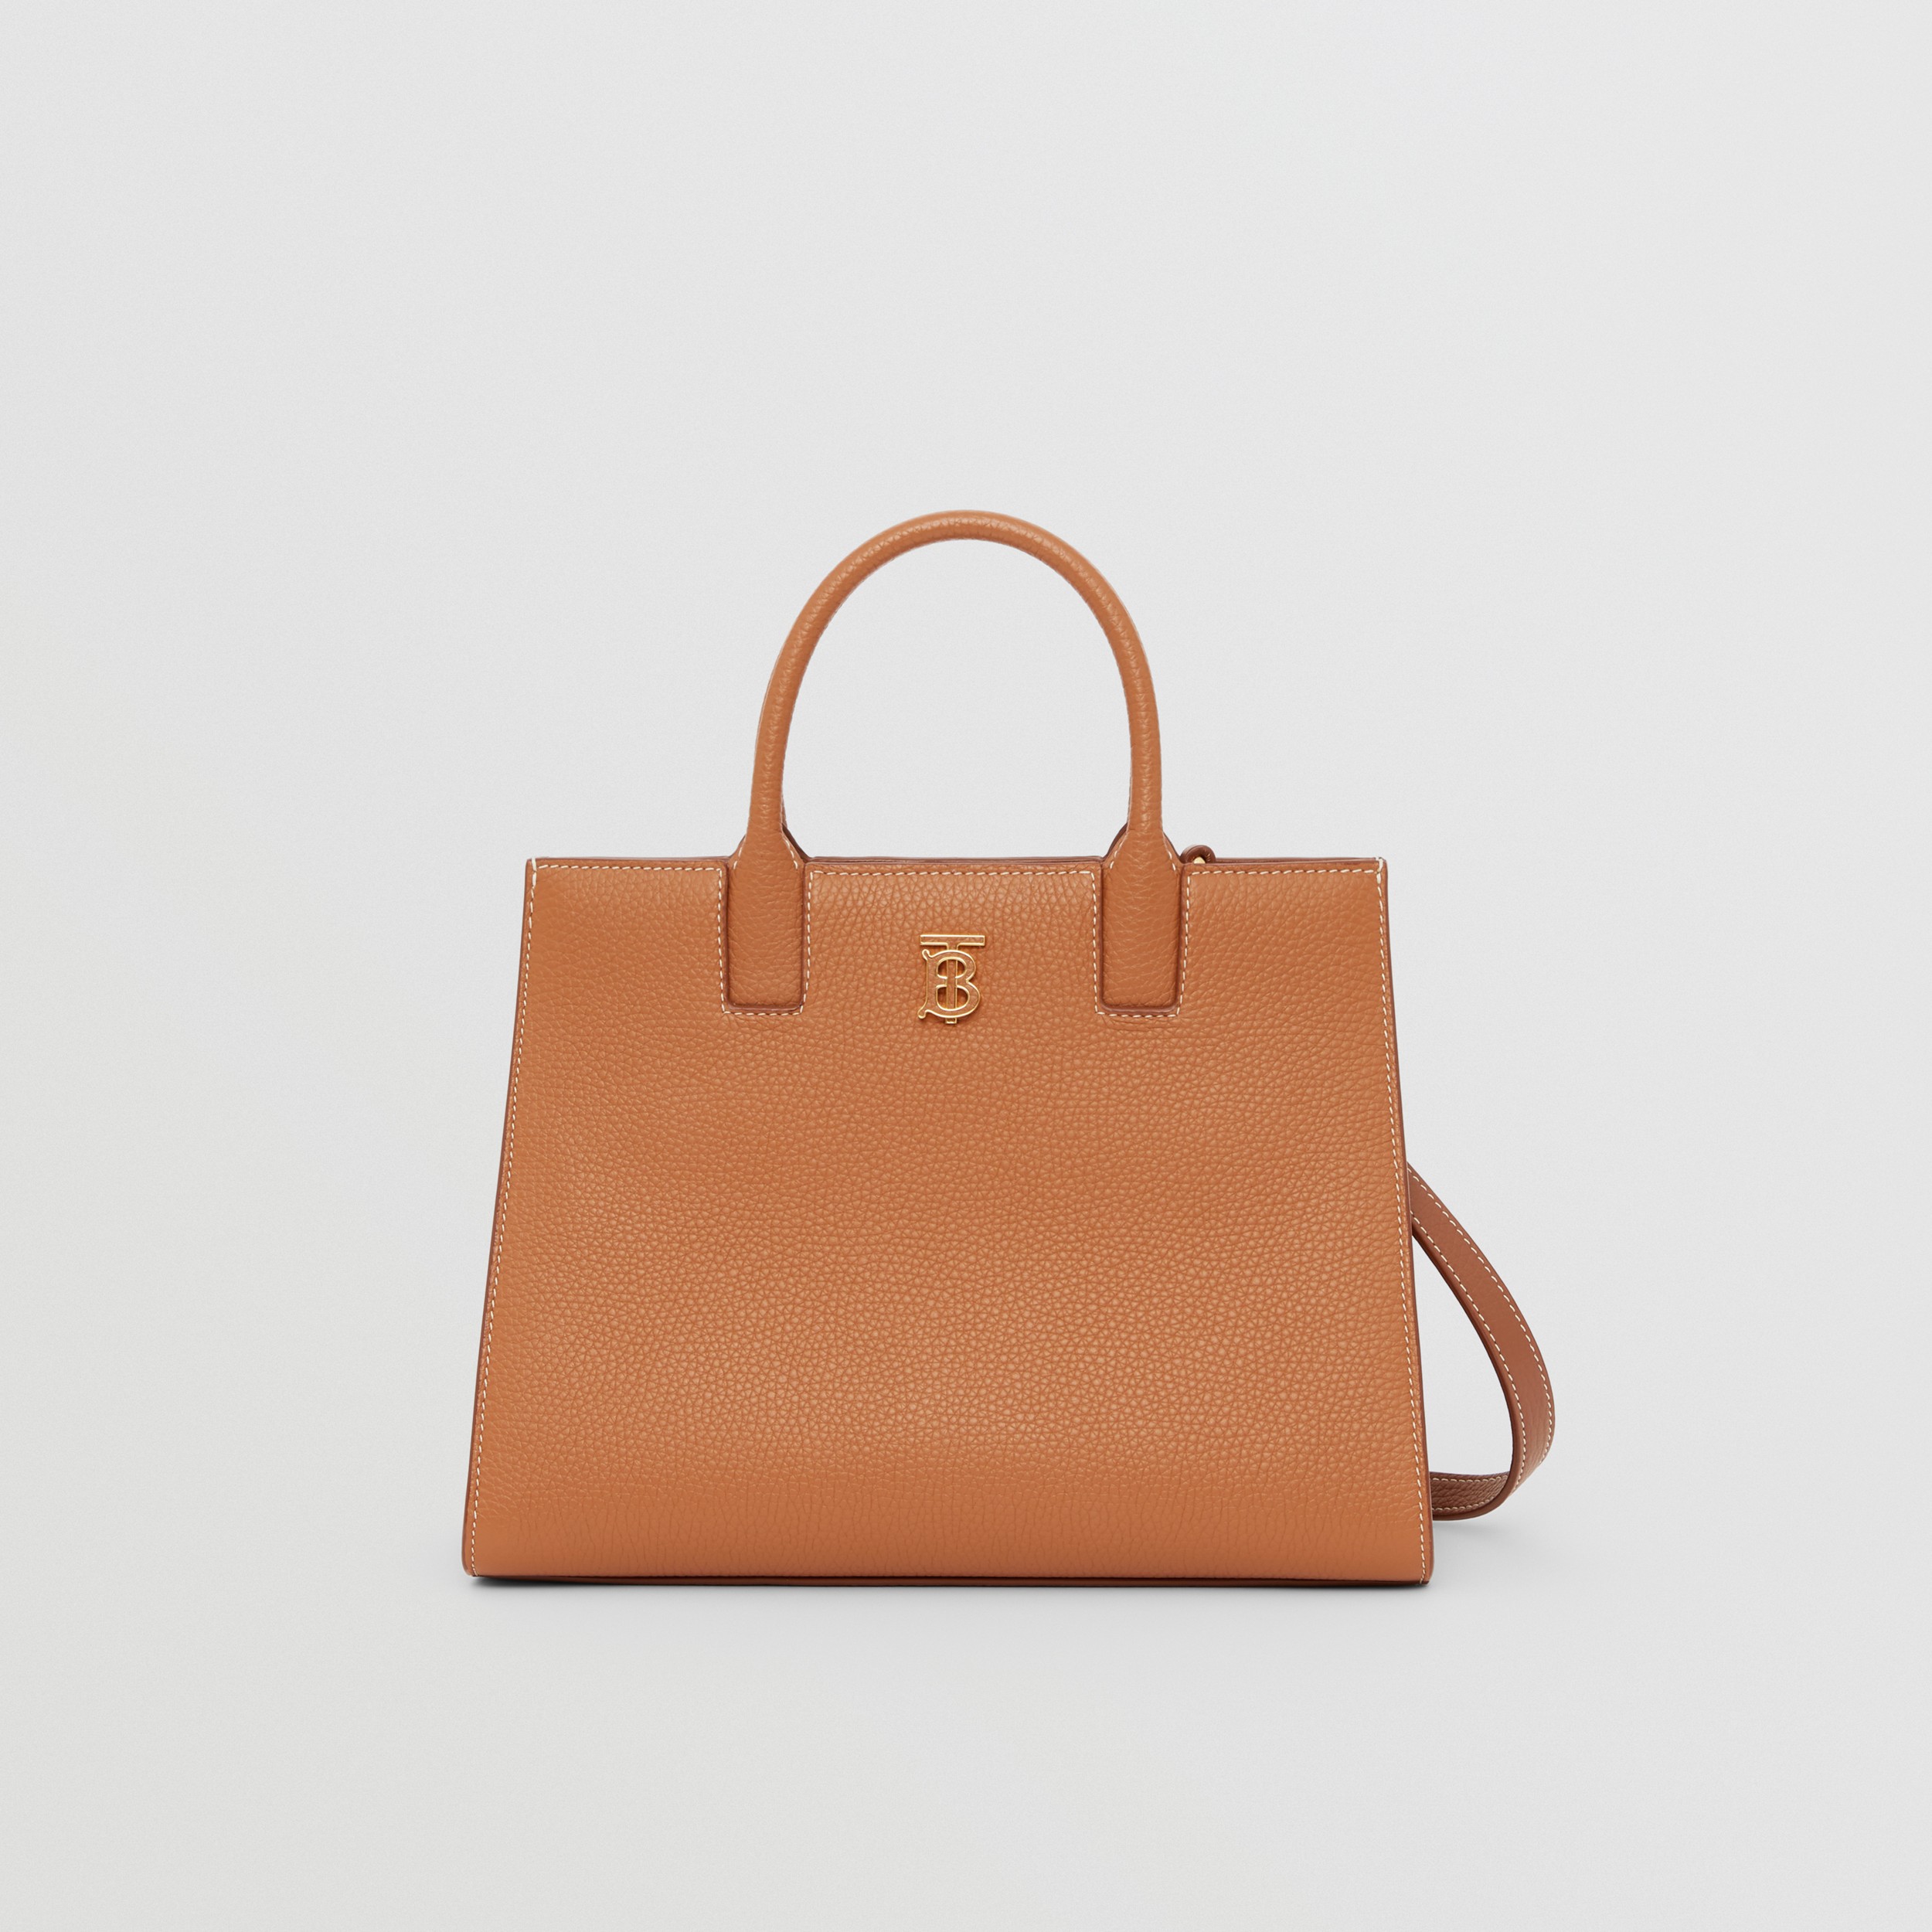 Кожаная сумка Frances, миниатюрный размер (Теплый Красно-коричневый) - Для женщин | Официальный сайт Burberry® - 1